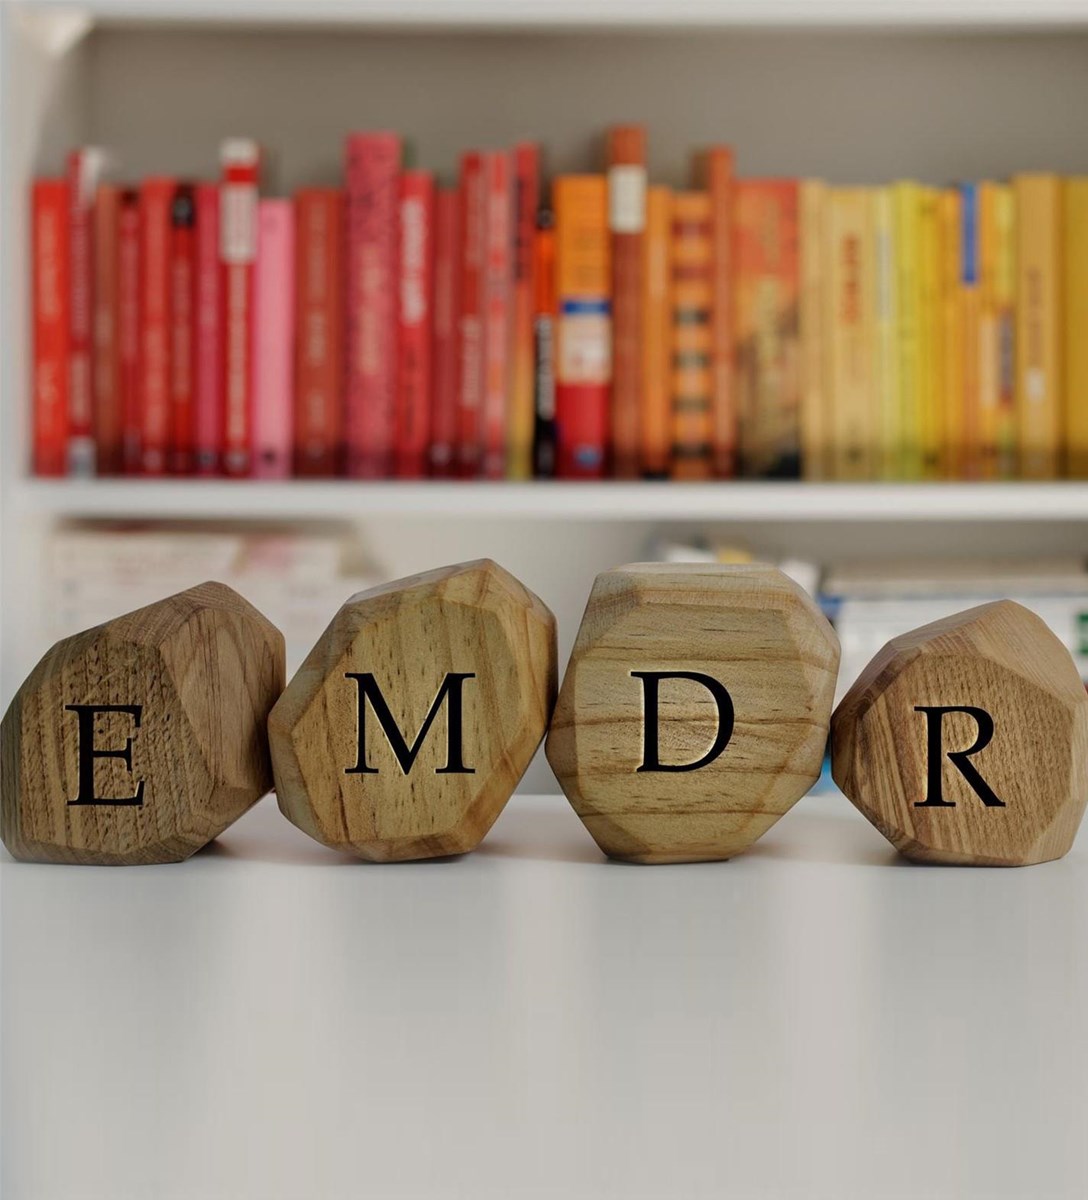 ¿En qué trastornos es efectiva la terapia EMDR?